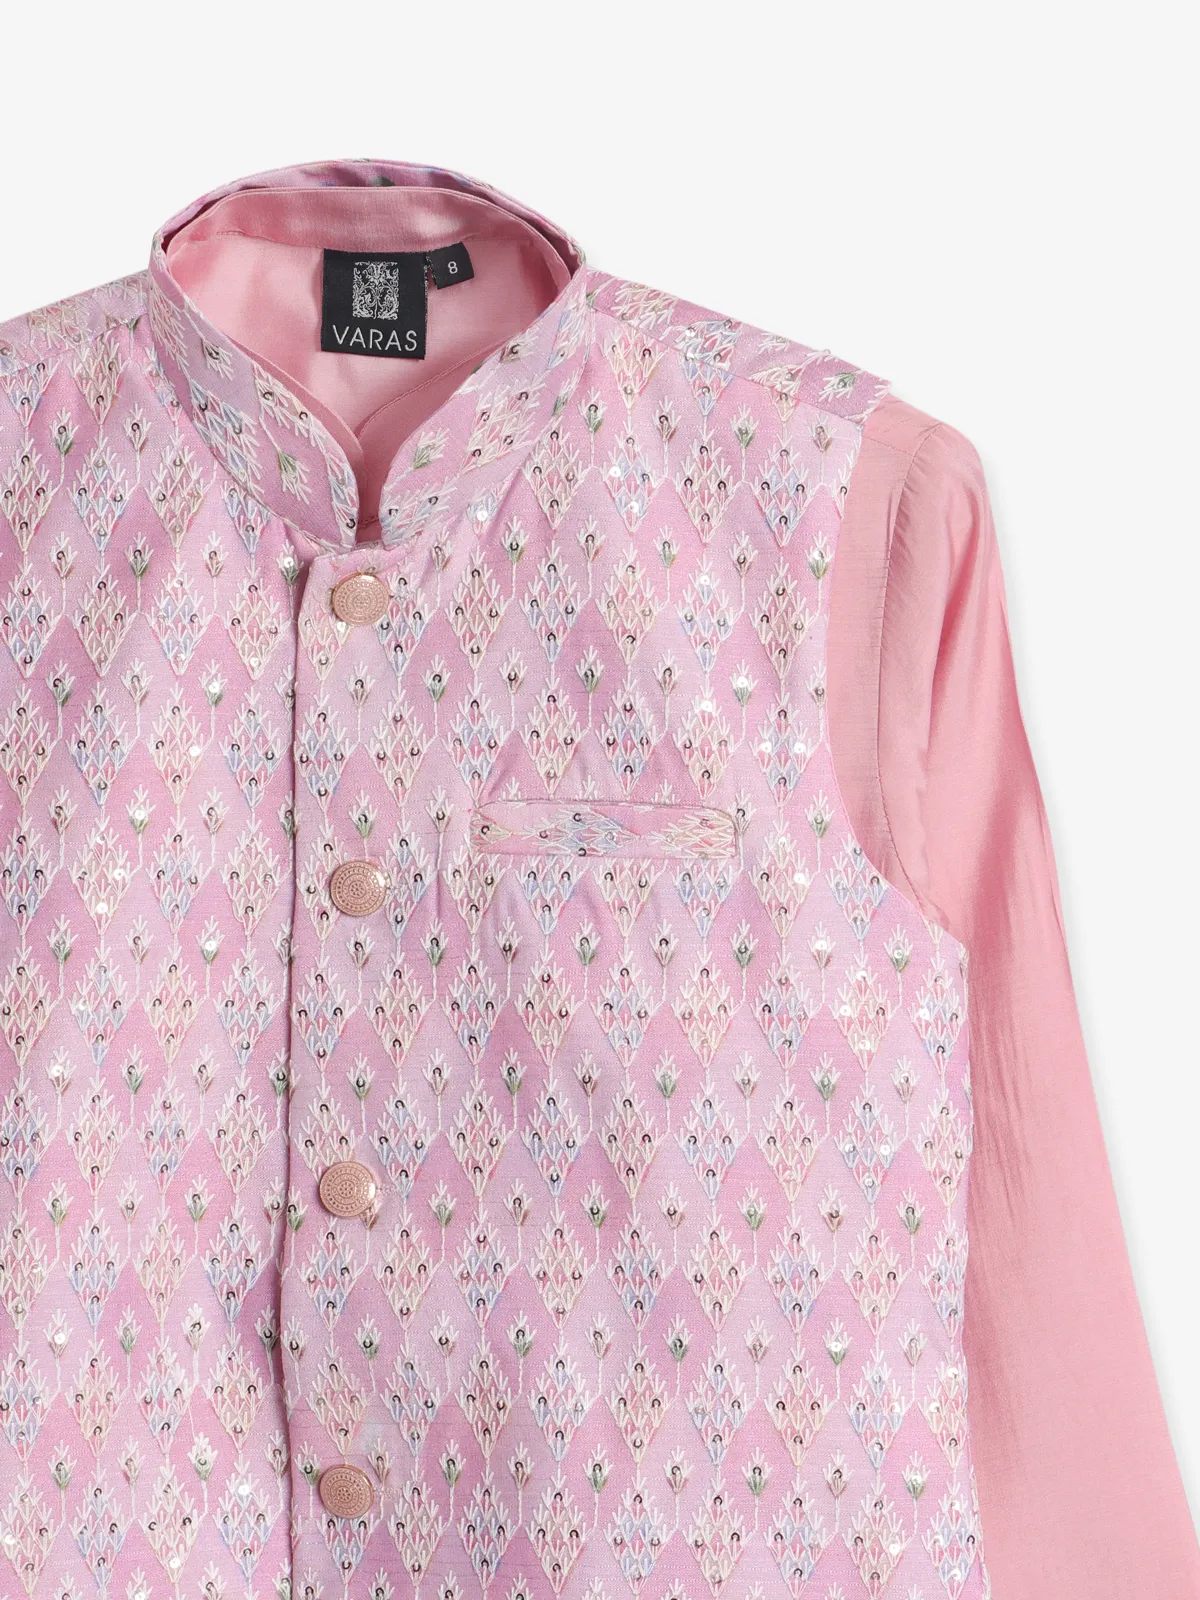 Stunning pink silk waistcoat set